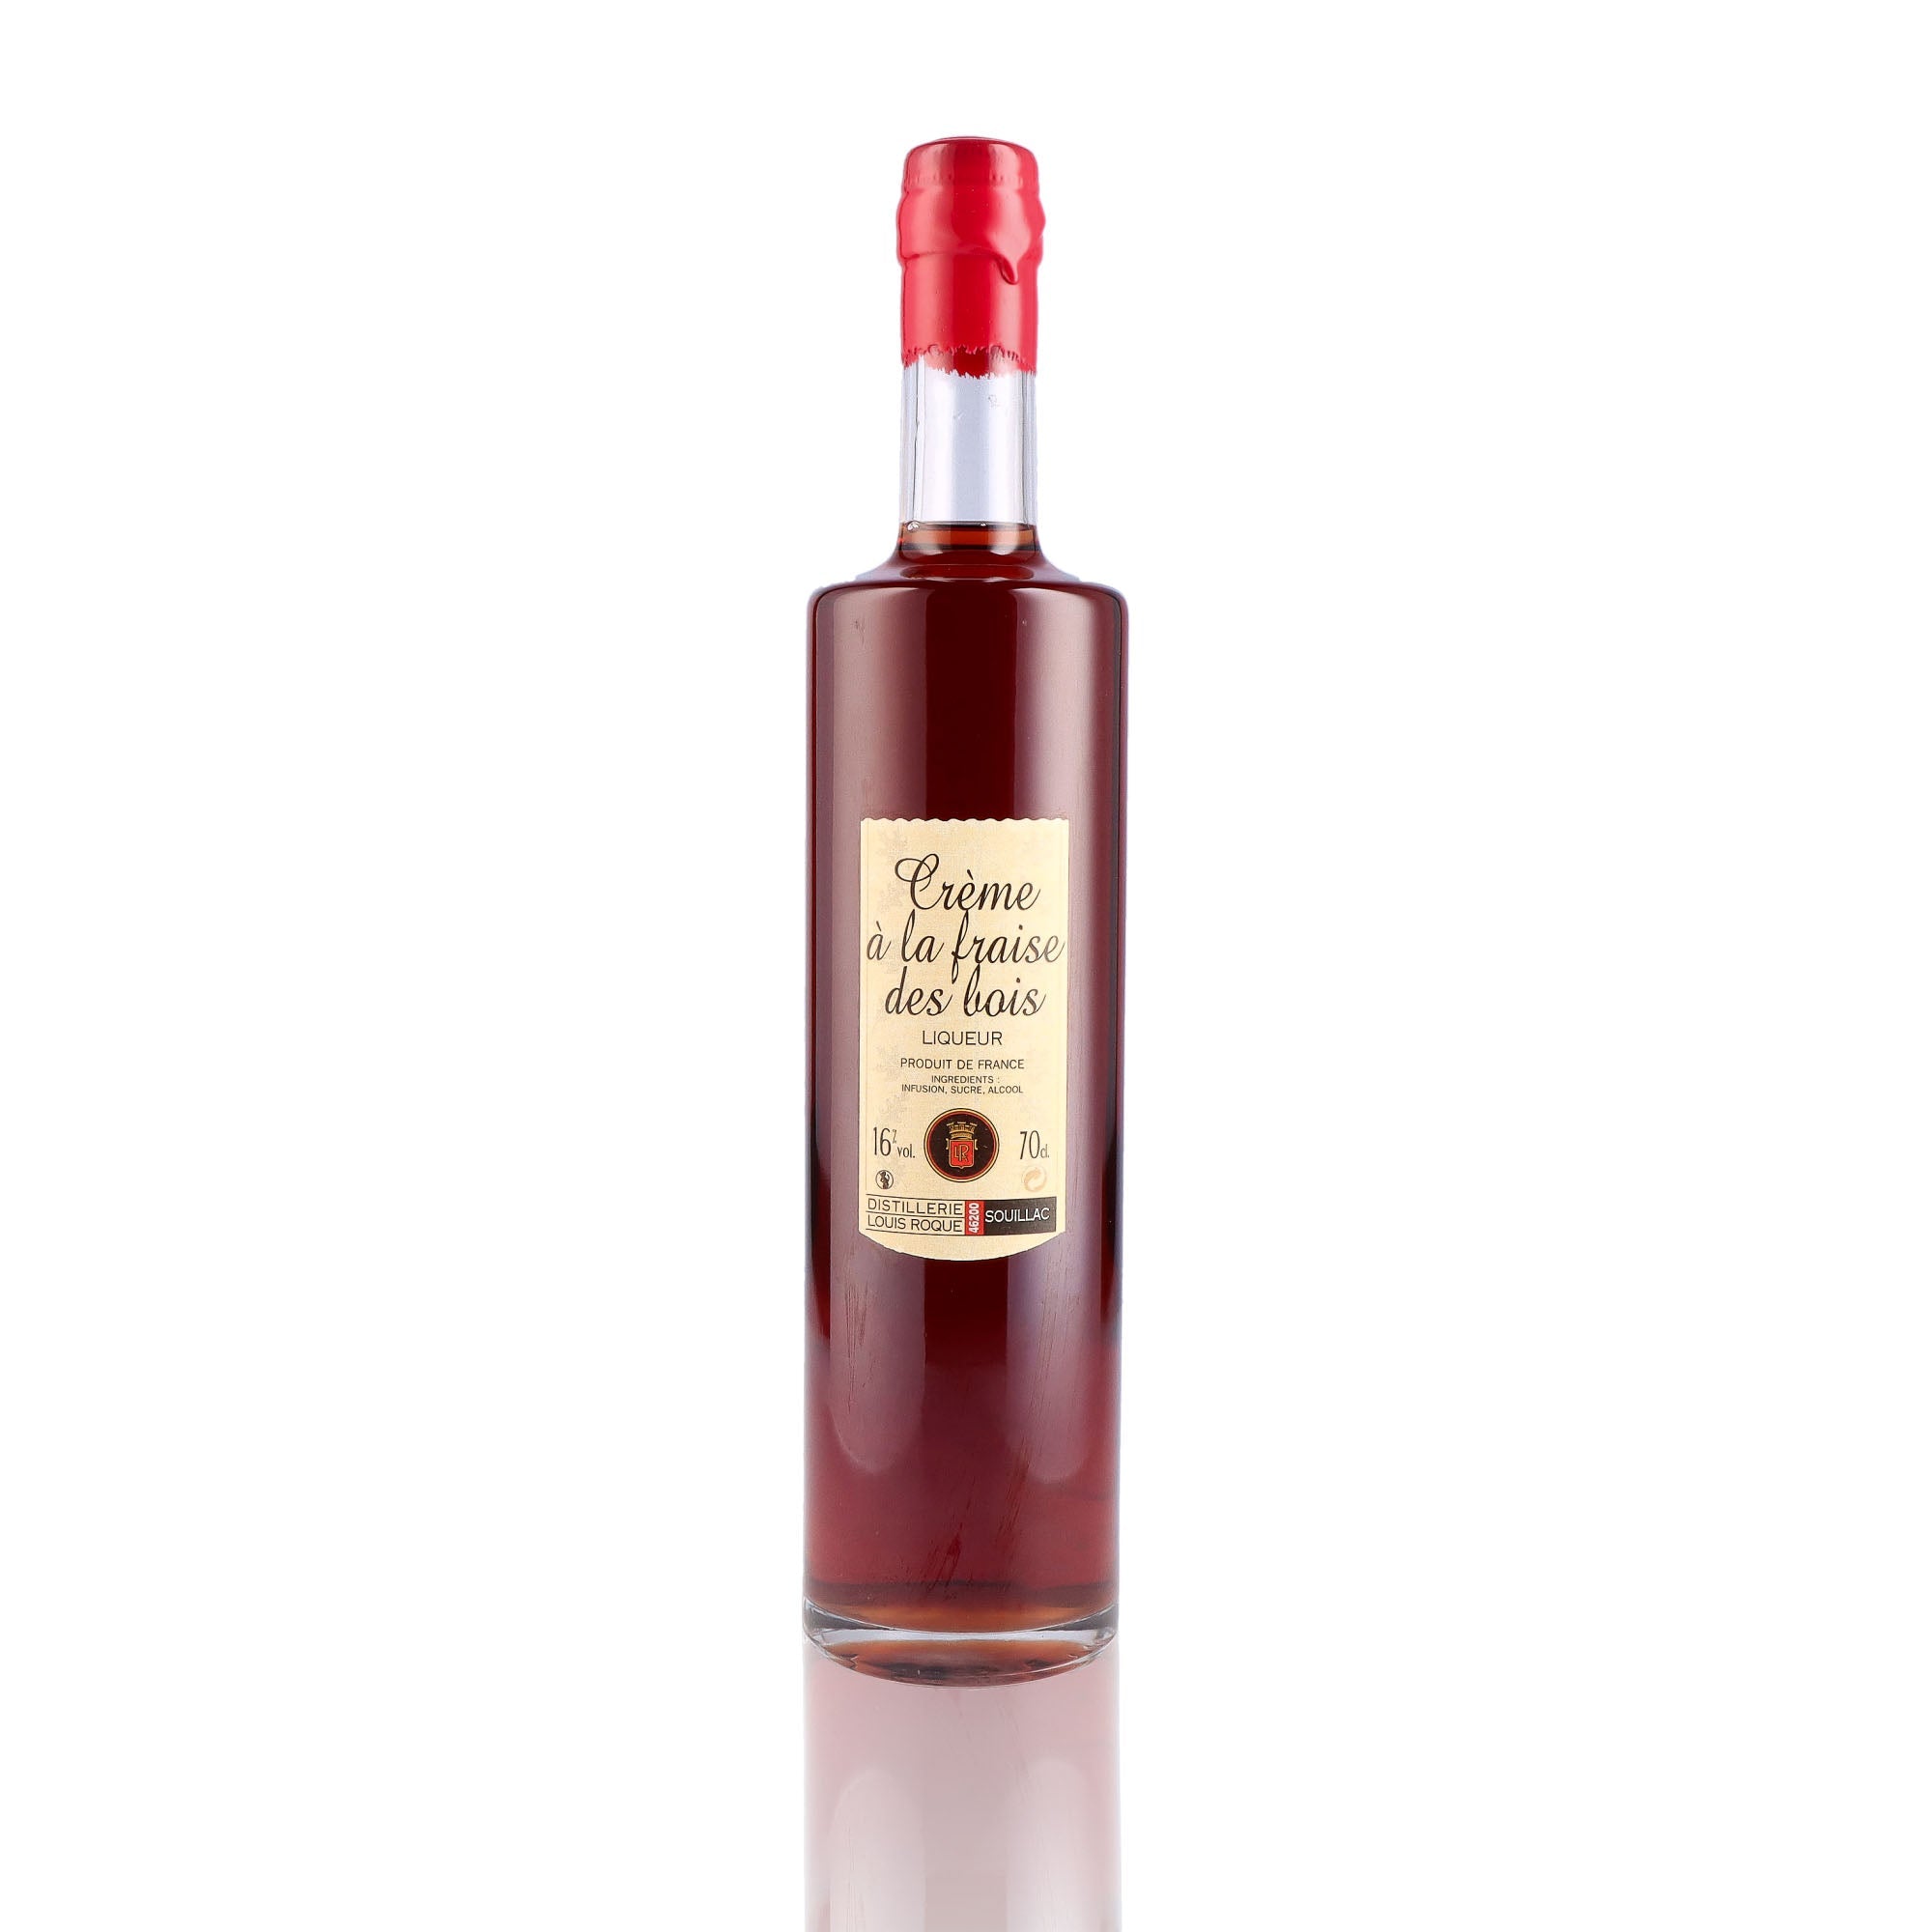 Une bouteille de Liqueur, de la marque Louis Roque, nommée Crème de Cerise.